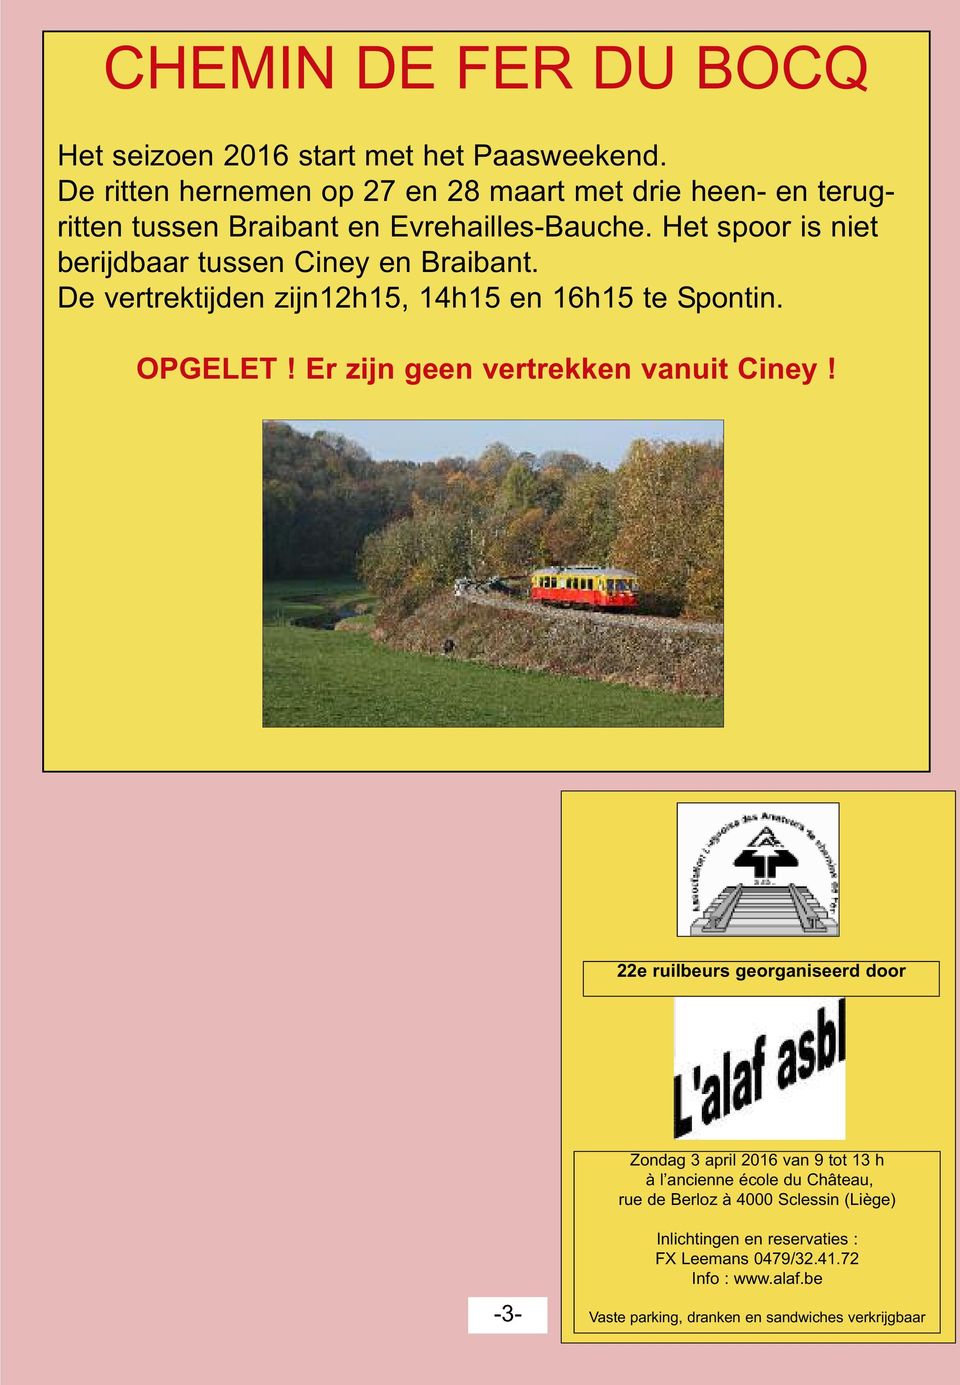 Het spoor is niet berijdbaar tussen Ciney en Braibant. De vertrektijden zijn12h15, 14h15 en 16h15 te Spontin. OPGELET!